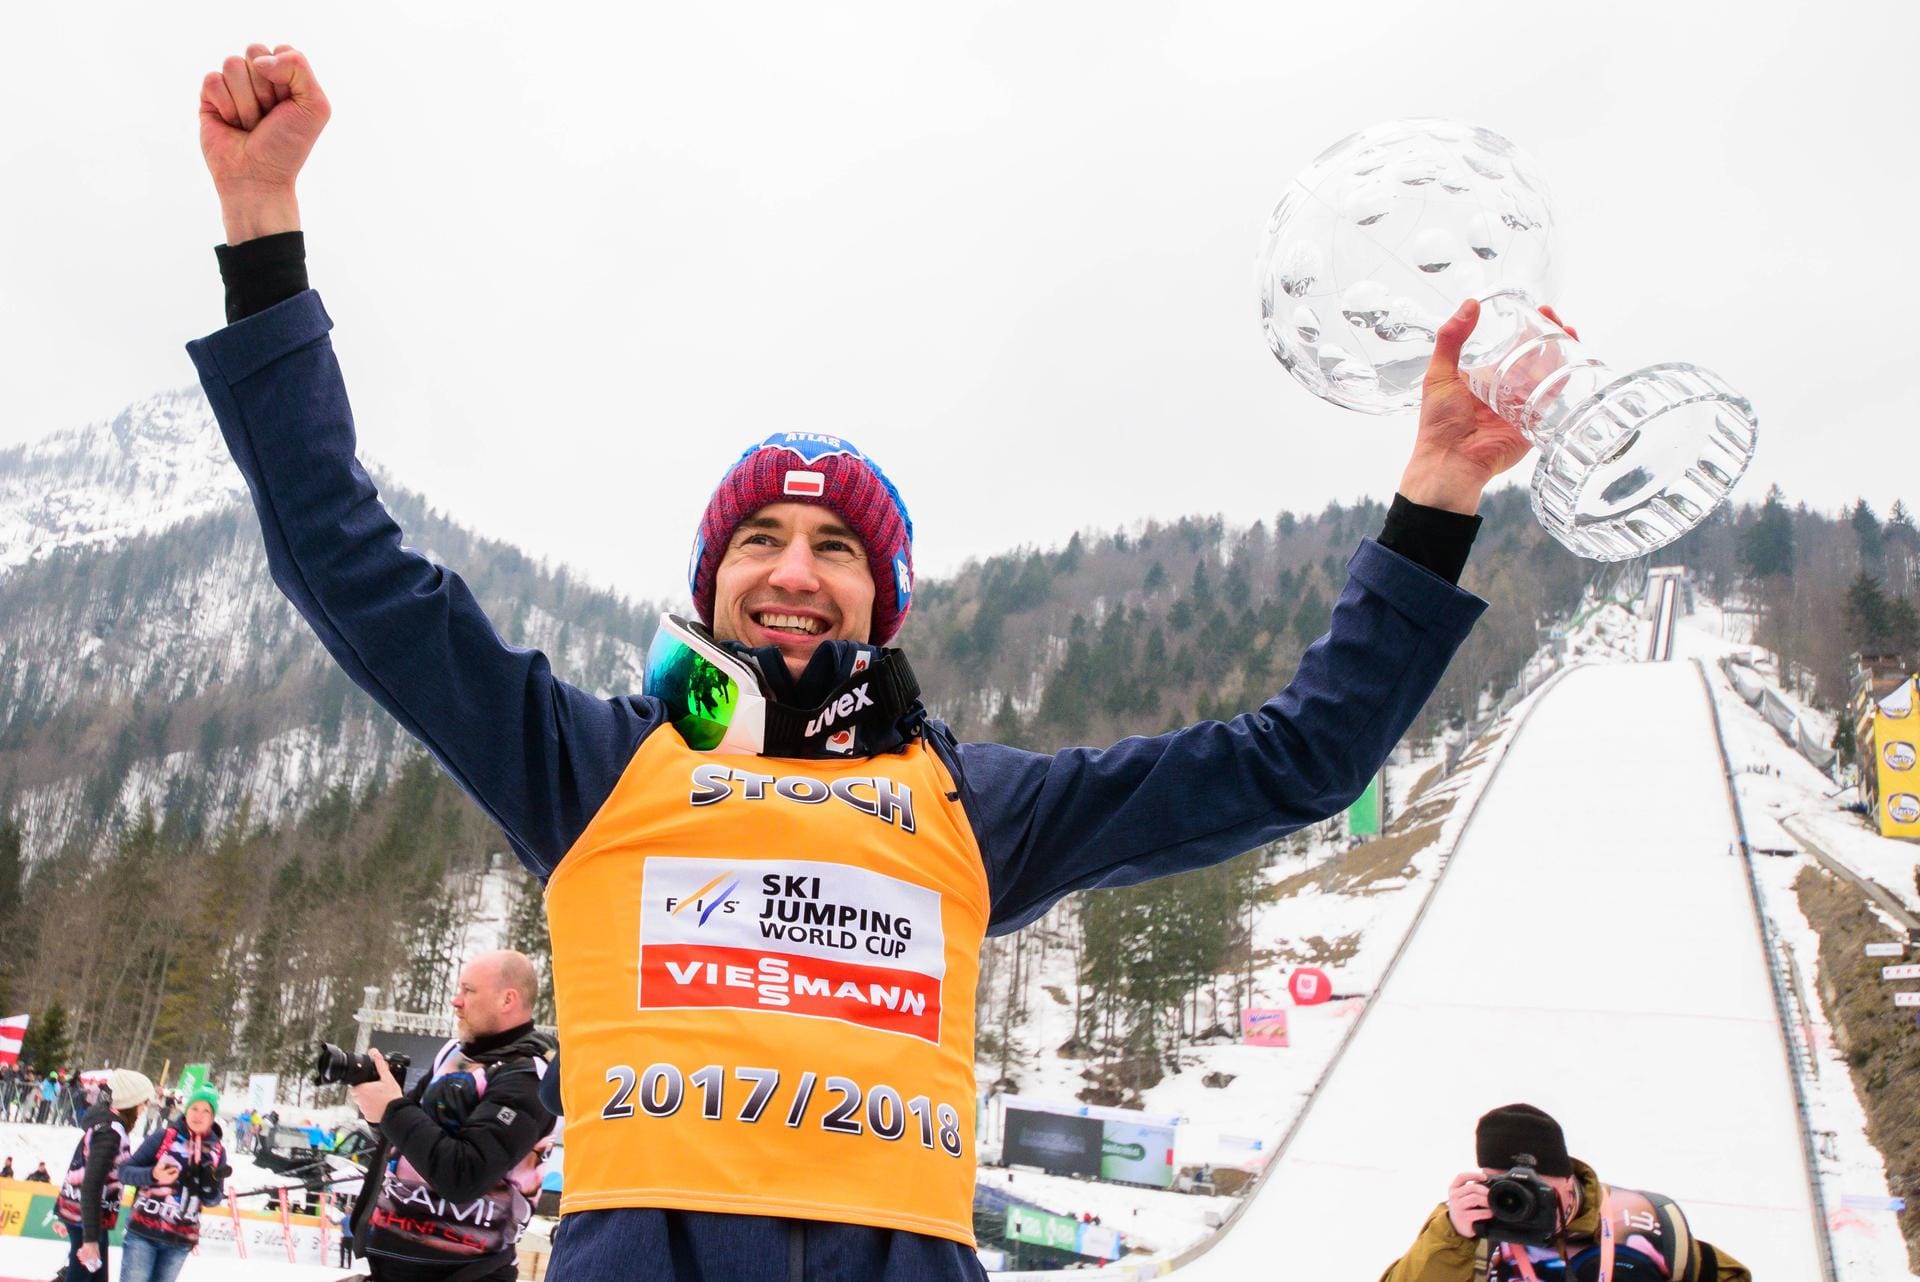 Kamil Stoch geht als Titelverteidiger in die neue Saison. Und auch als Topfavorit. Der Pole gewann in der Vorsaison neben dem Gesamtweltcup auch Olympisches Gold und die Vierschanzentournee.